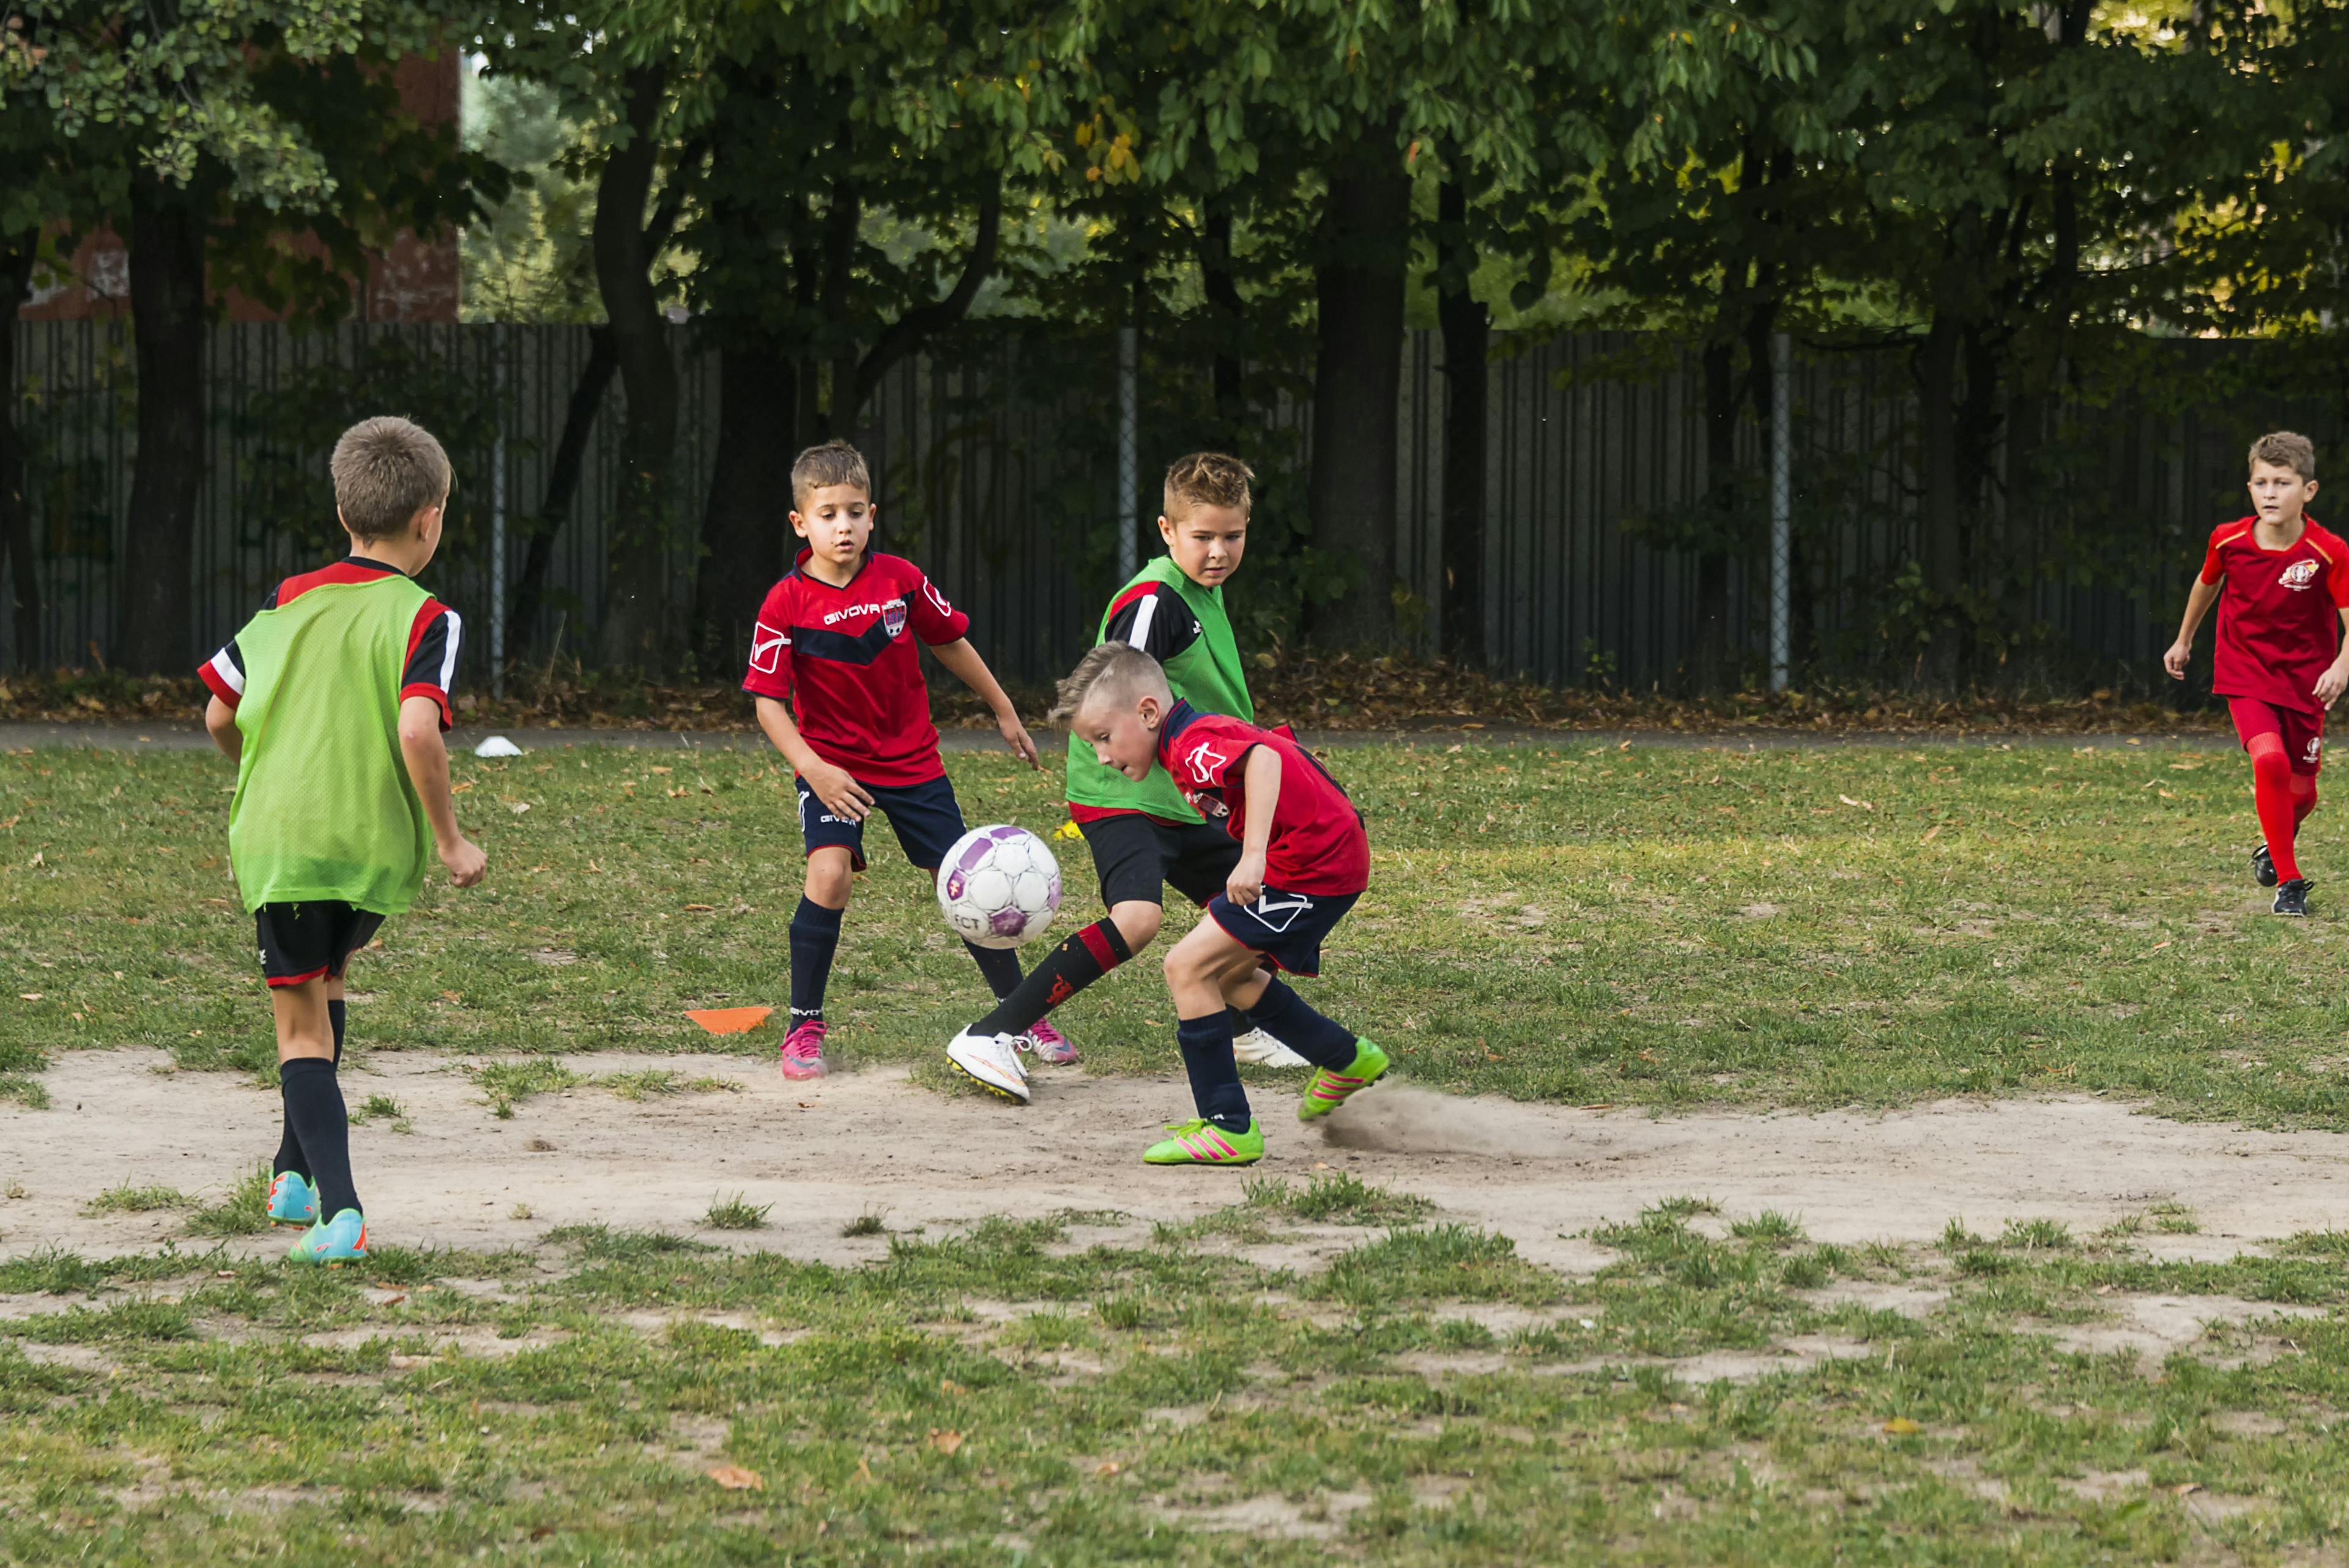 Kleine Kids spielen Fußball auf einem Bolzplatz. Sie tragen Fußballtrikots und Laibchen. Einer erkämpft sich den Ball und bereitet gerade einen Angriff vor.